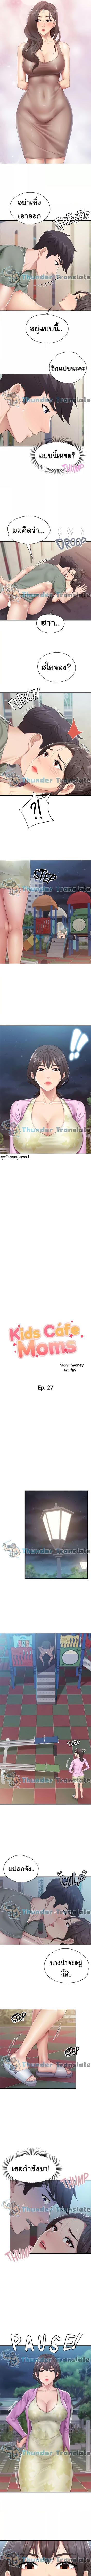 Doujin-Lc- อ่าน โดจิน มังฮวา เกาหลี ญี่ปุ่น จีน แปลไทย Welcome To Kids Cafe ตอนที่ 1 2 3 4 5 6 7 8 9 10 11 12 13 14 ฟรี ไม่มีโฆษณา อ่าน โดจิน Manhwa เกาหลี ญี่ปุ่น จีน เรามีครบ คัดมาให้เน้นๆ โดจิน 18+ รับประกันความฟินโดย  Doujin Lc